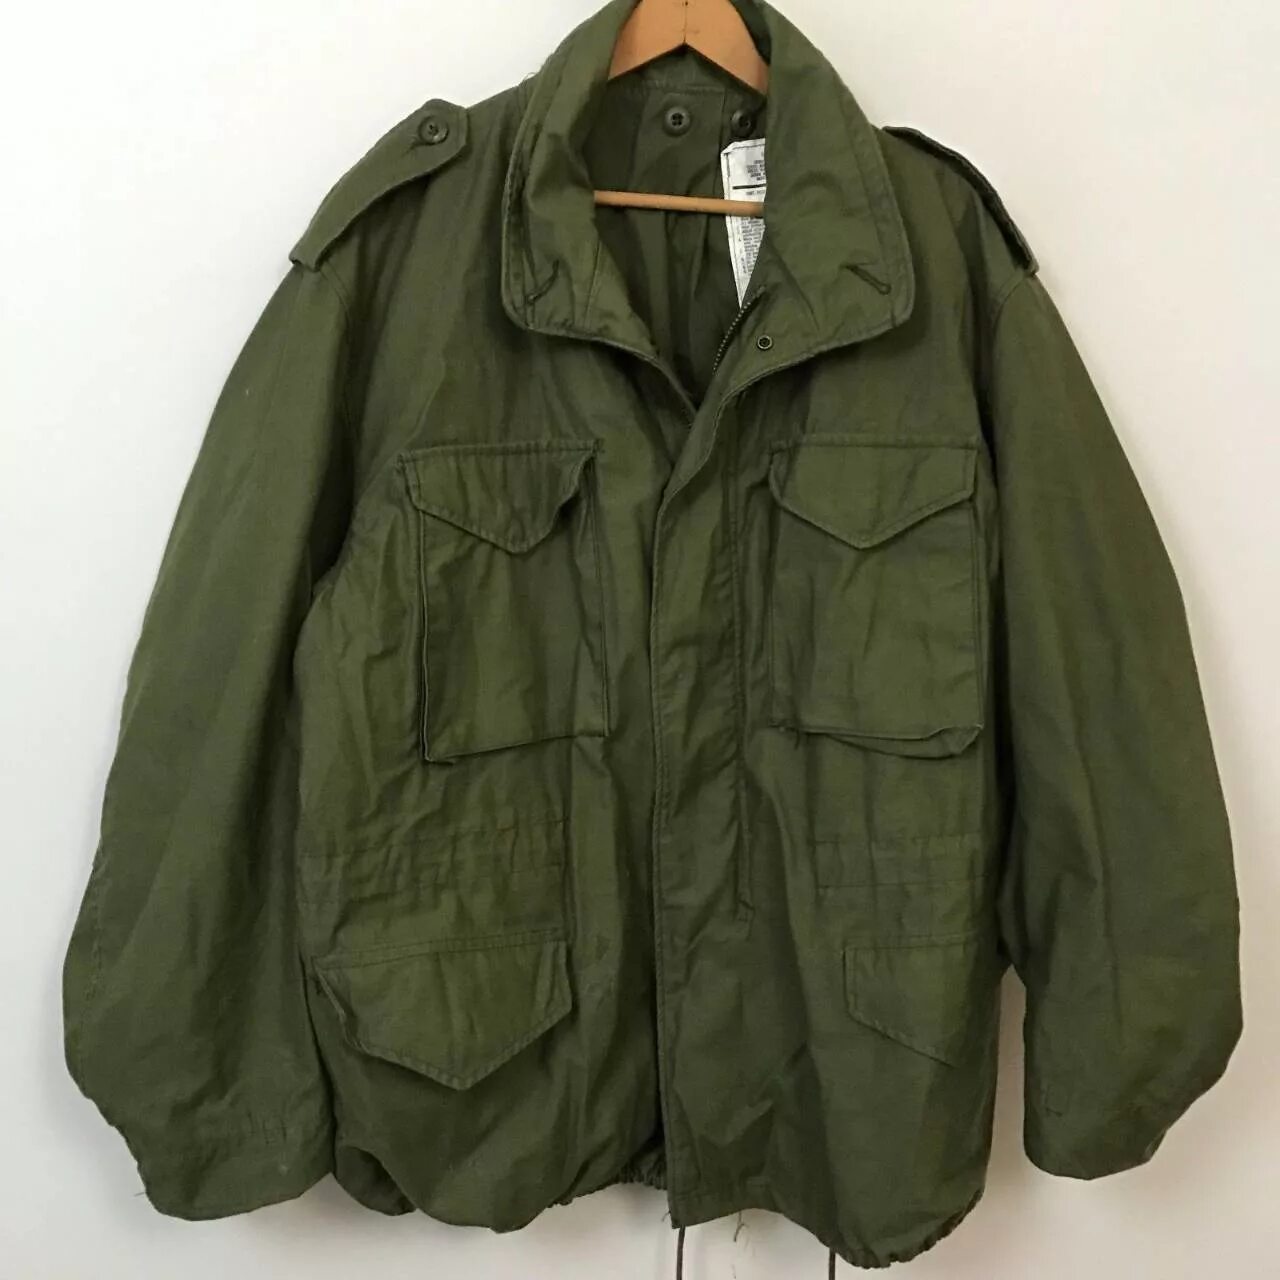 Куртка милитари м65 олива. М 65 олива. Куртки м65 на валберис. Куртка м65 Nagano.